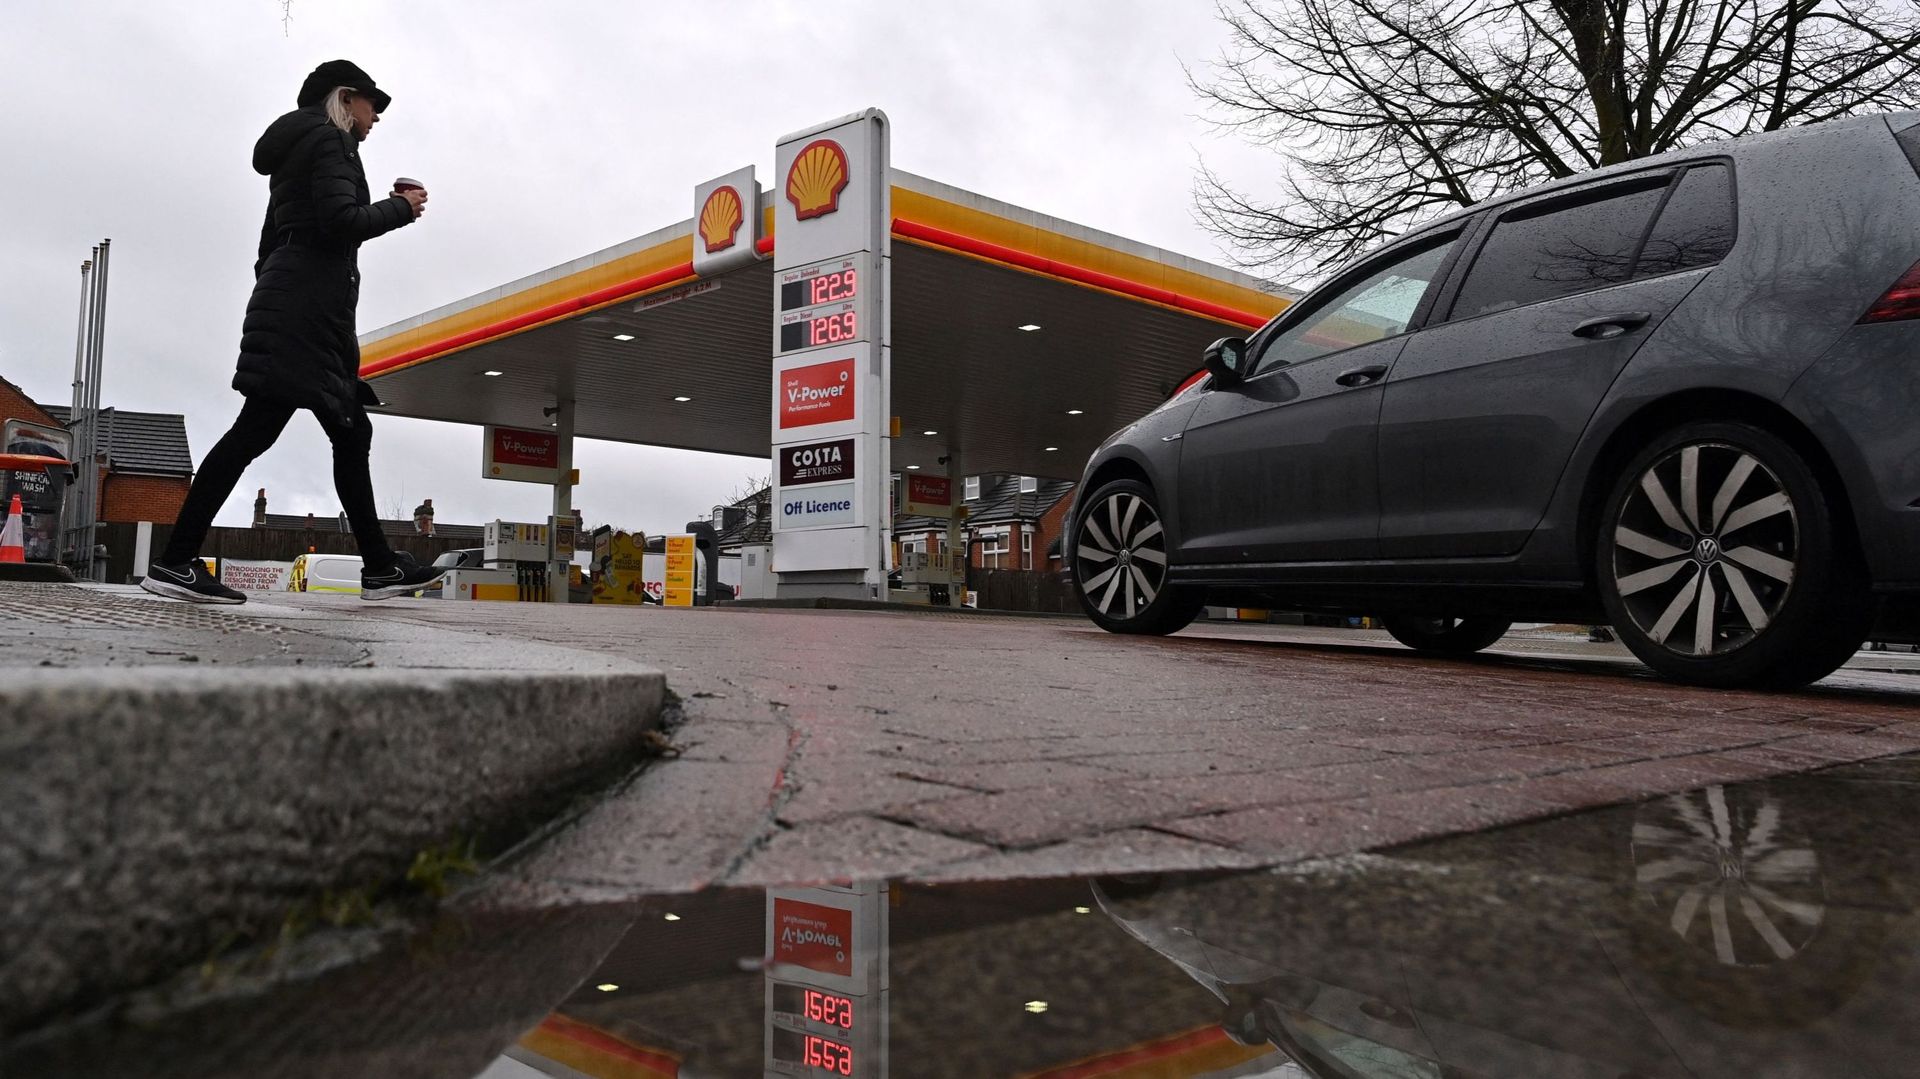 Station essence de la marque Shell à Londres le 04 février 2021 (image d'illustration)